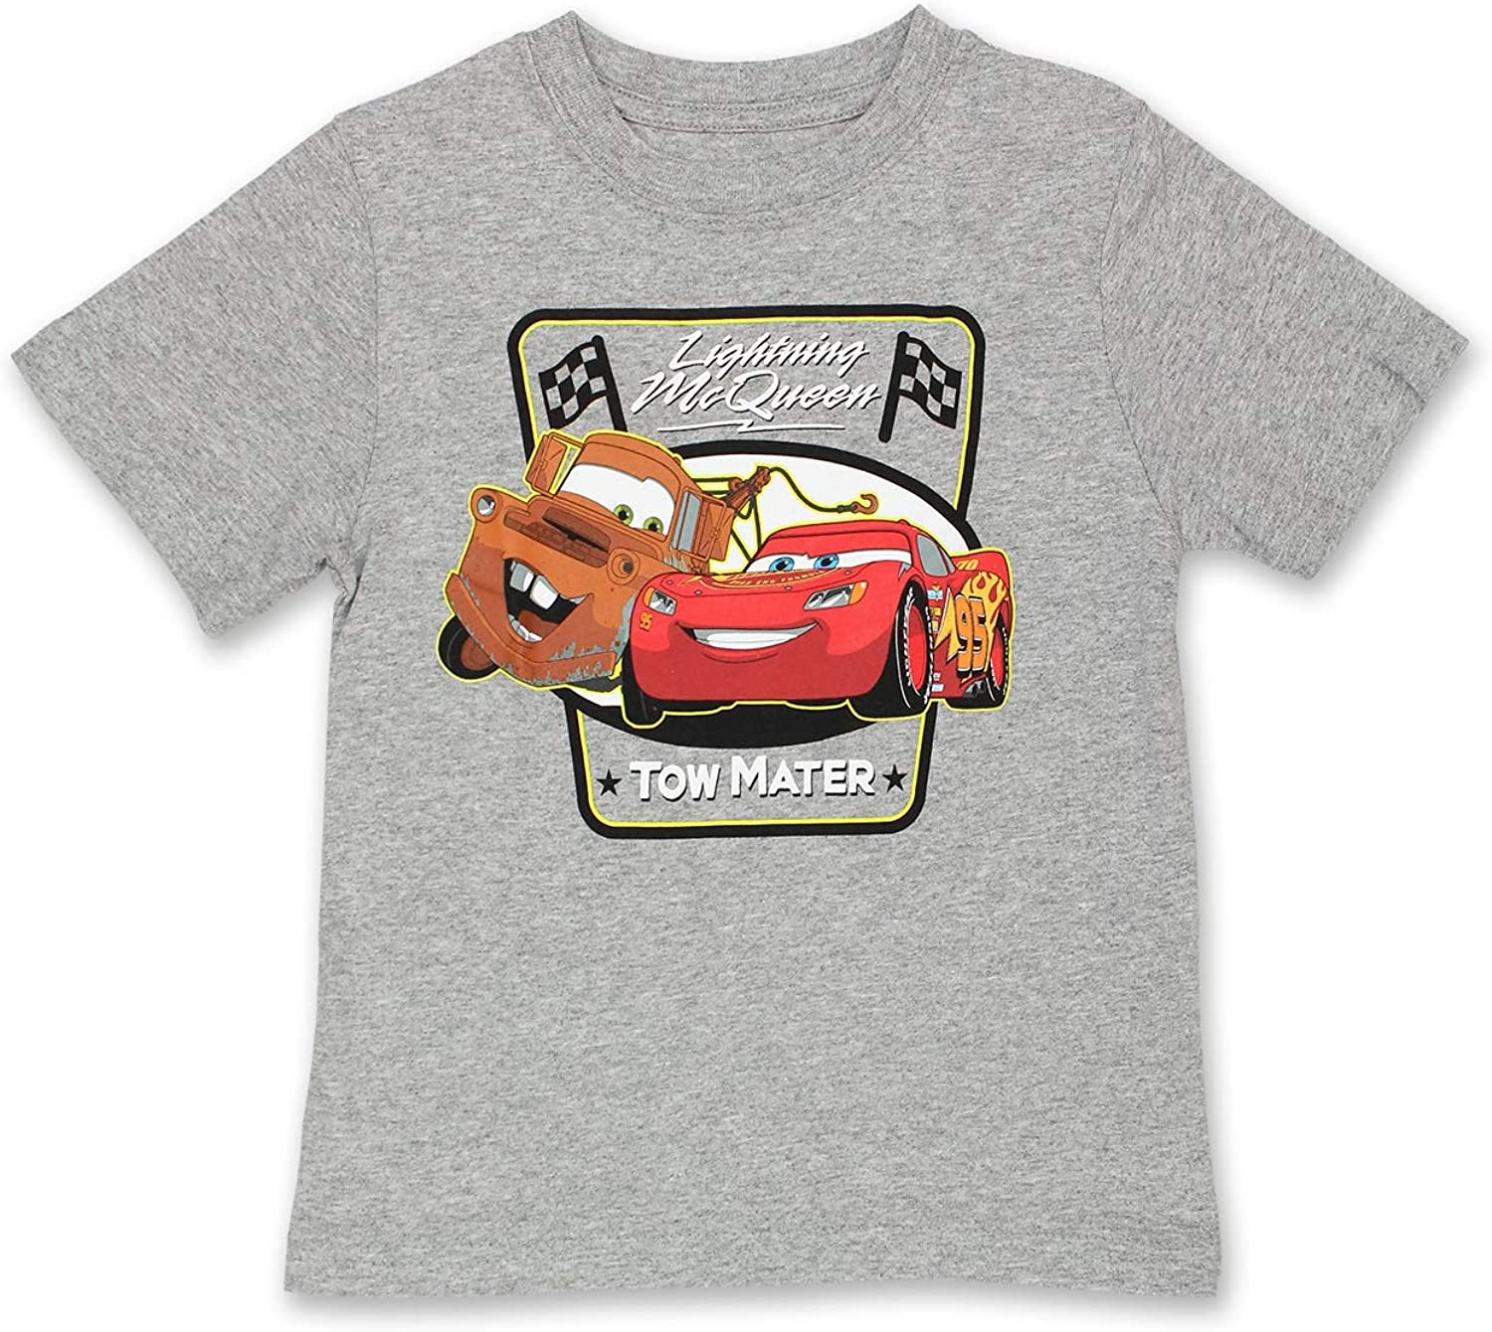 Disney Cars Tow Mater Toddler Boys Short Sleeve T-Shirt Tee